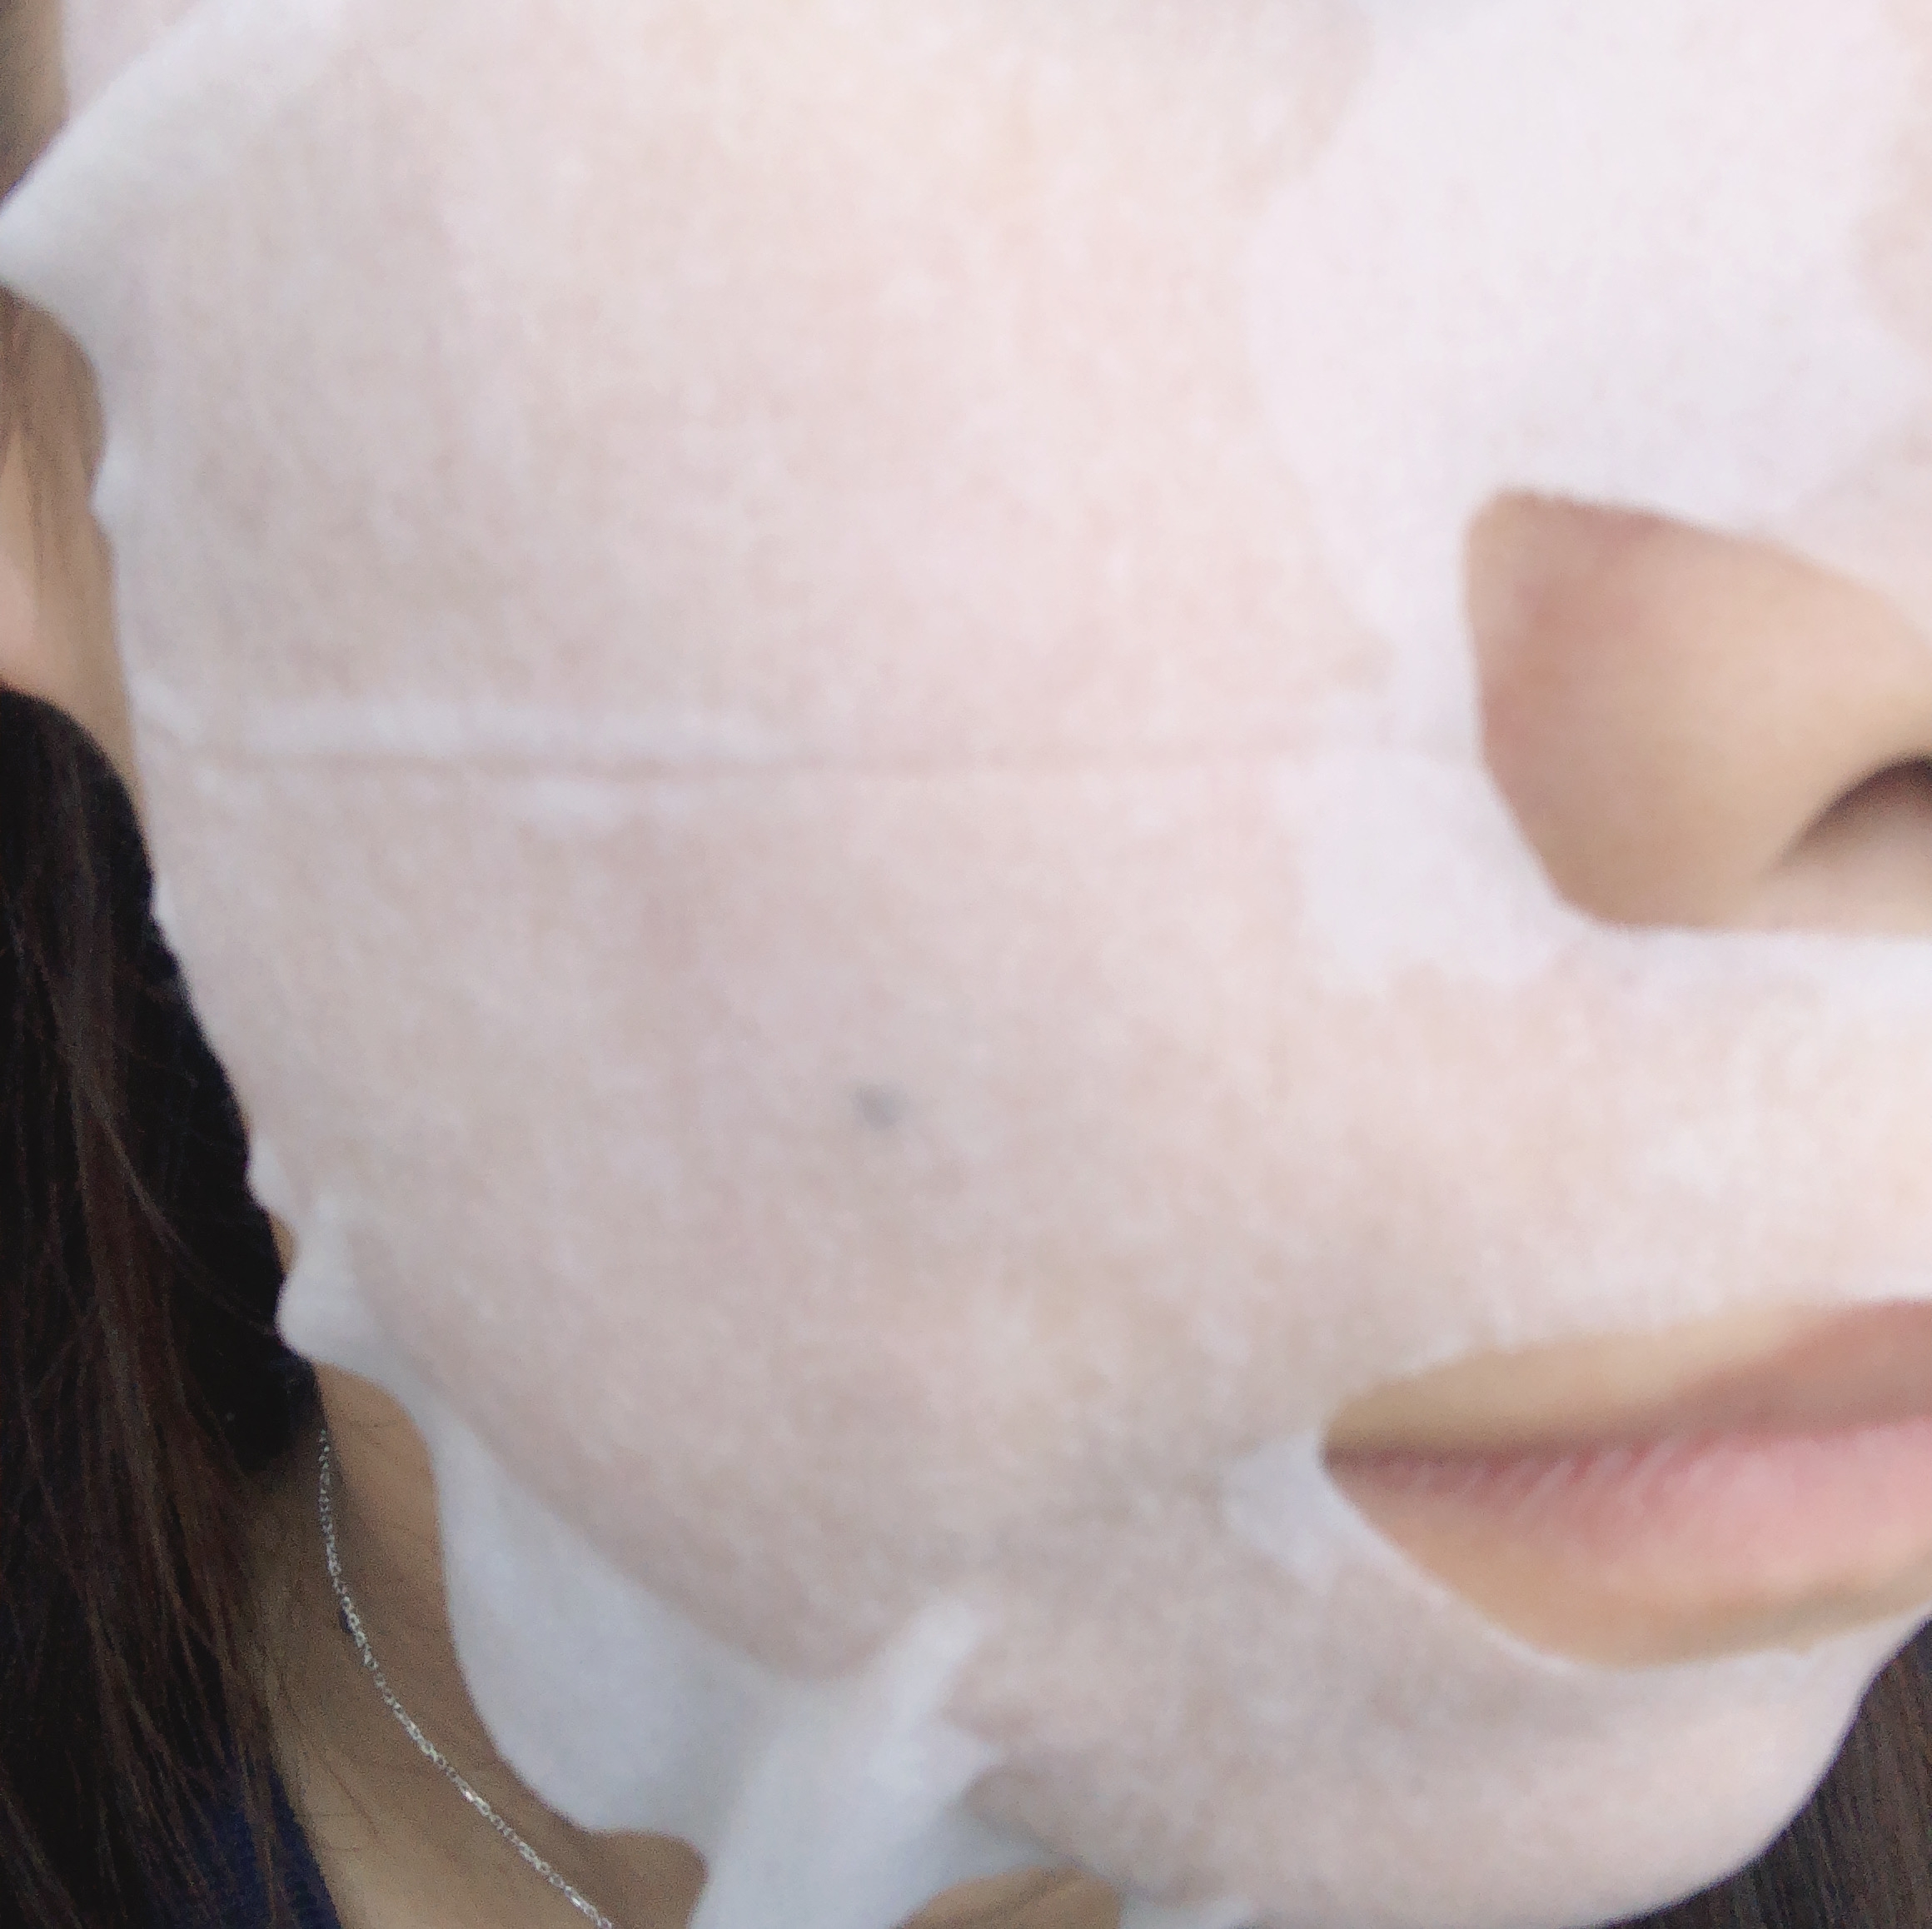 Labo Labo(ラボラボ) 毛穴マスクの良い点・メリットに関するyungさんの口コミ画像3